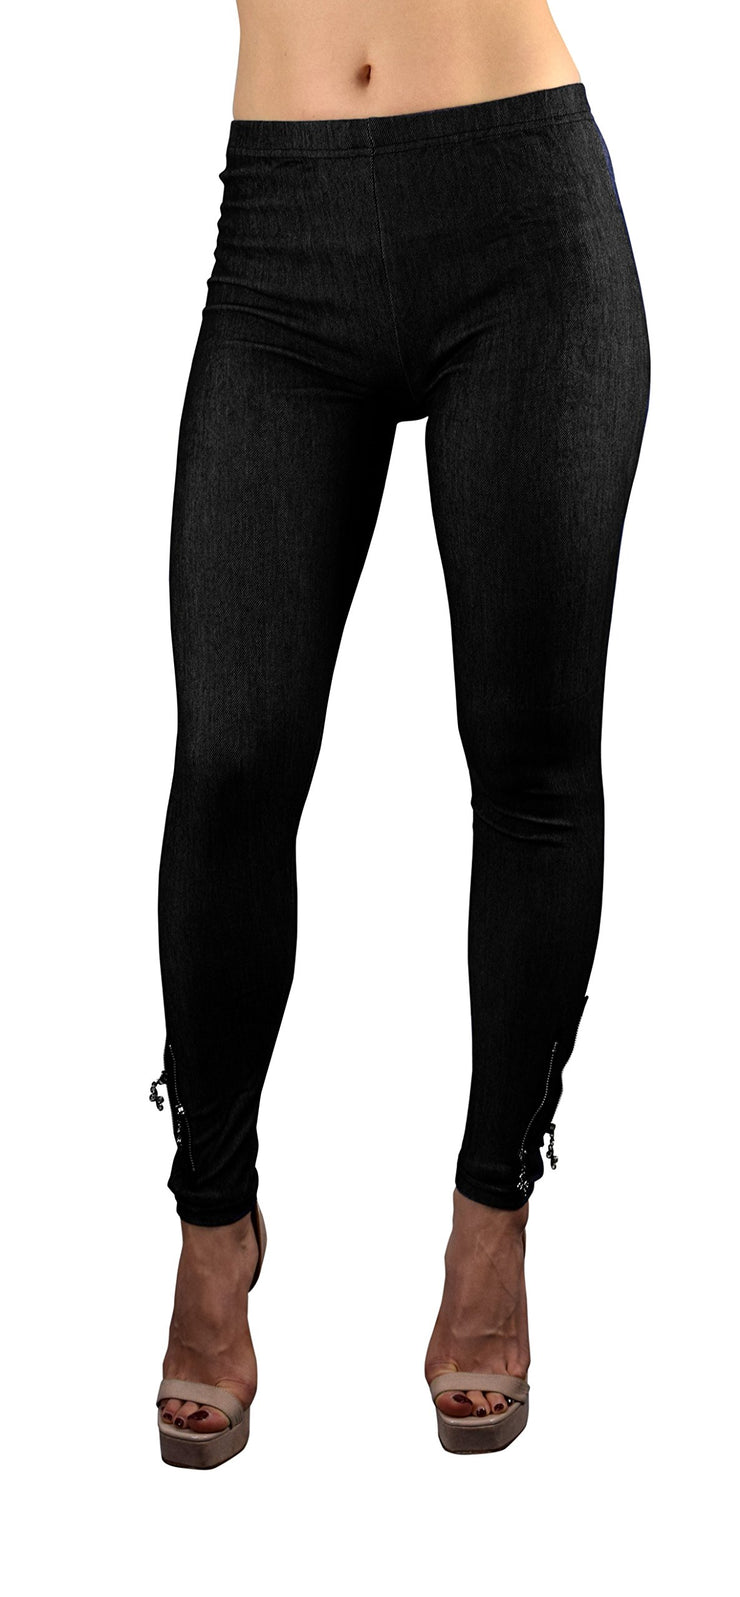 9065-jean-leggings-black-onesize